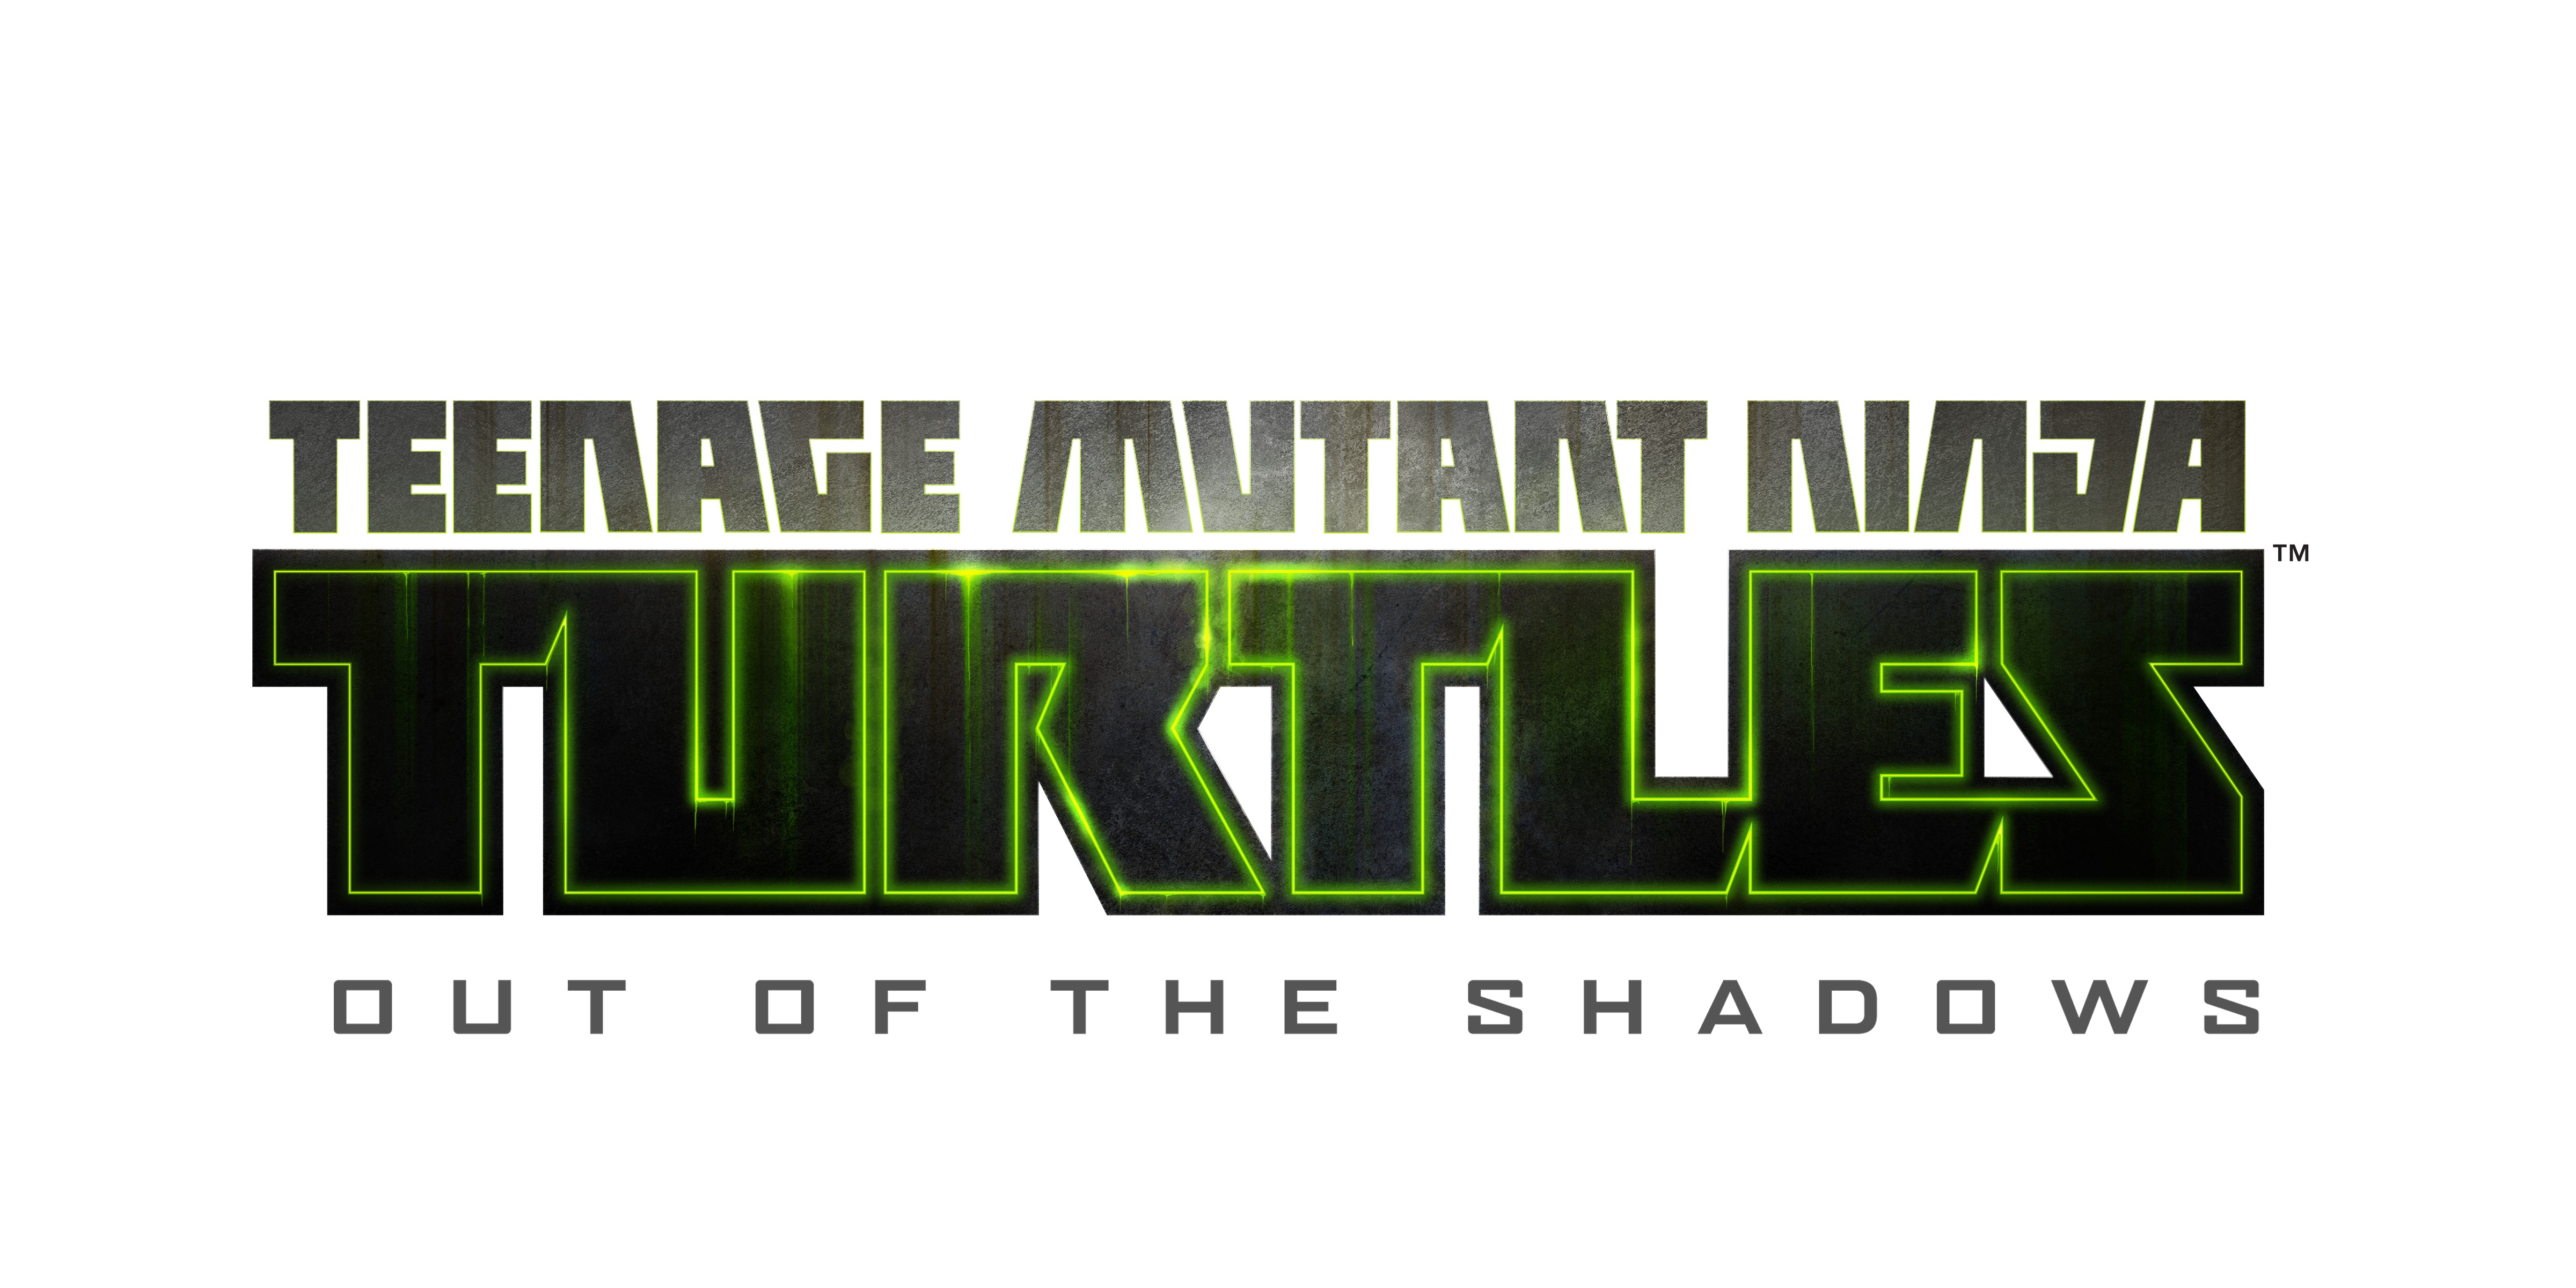 Teenage mutant ninja turtles out of the shadows купить ключ стим фото 87